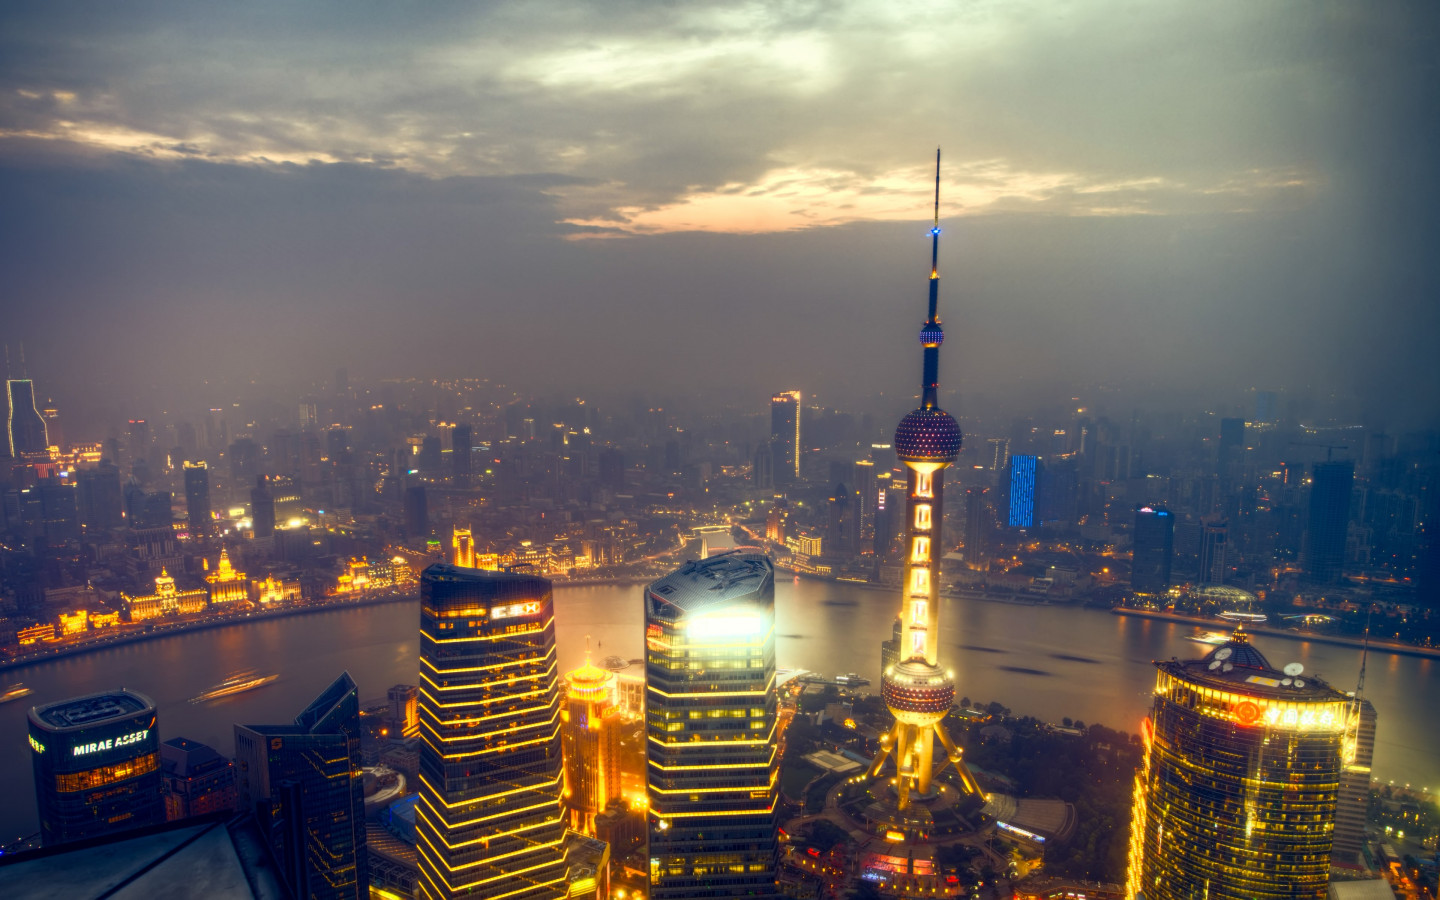 Sunset over Shanghai wallpaper 1440x900